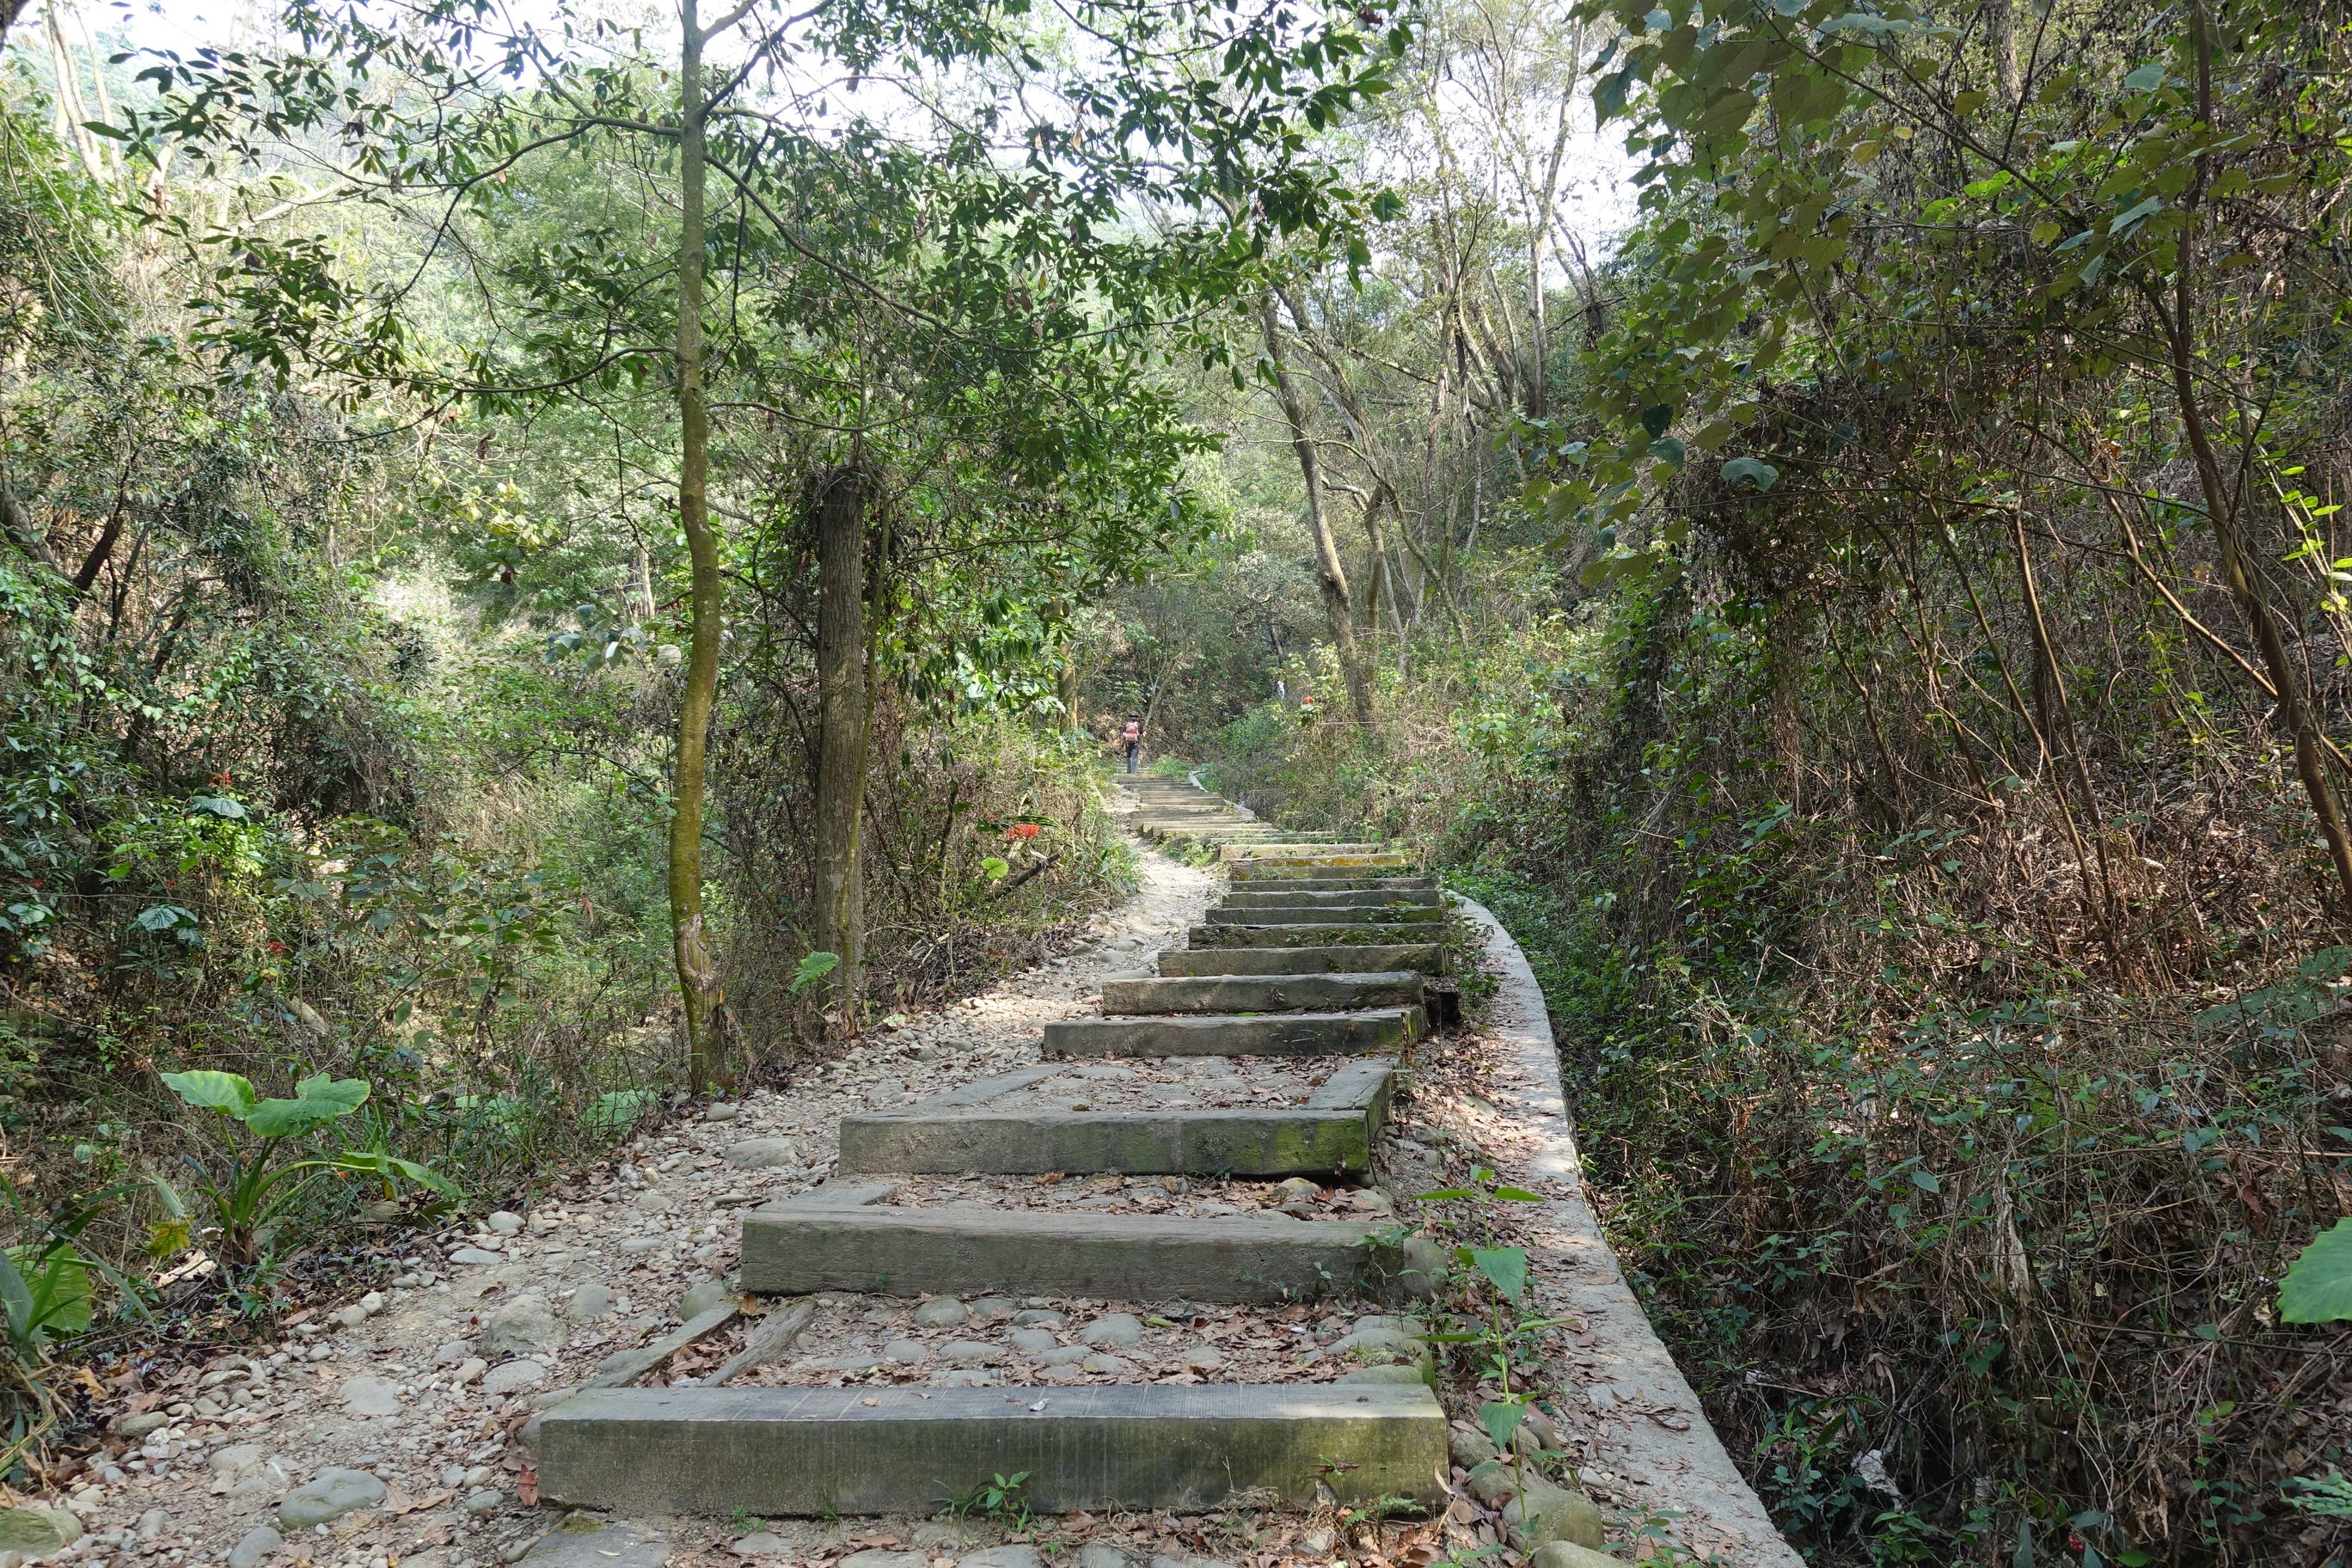 1中央嶺造林步道終點處擎天崗為最具挑戰性的陡峭階梯